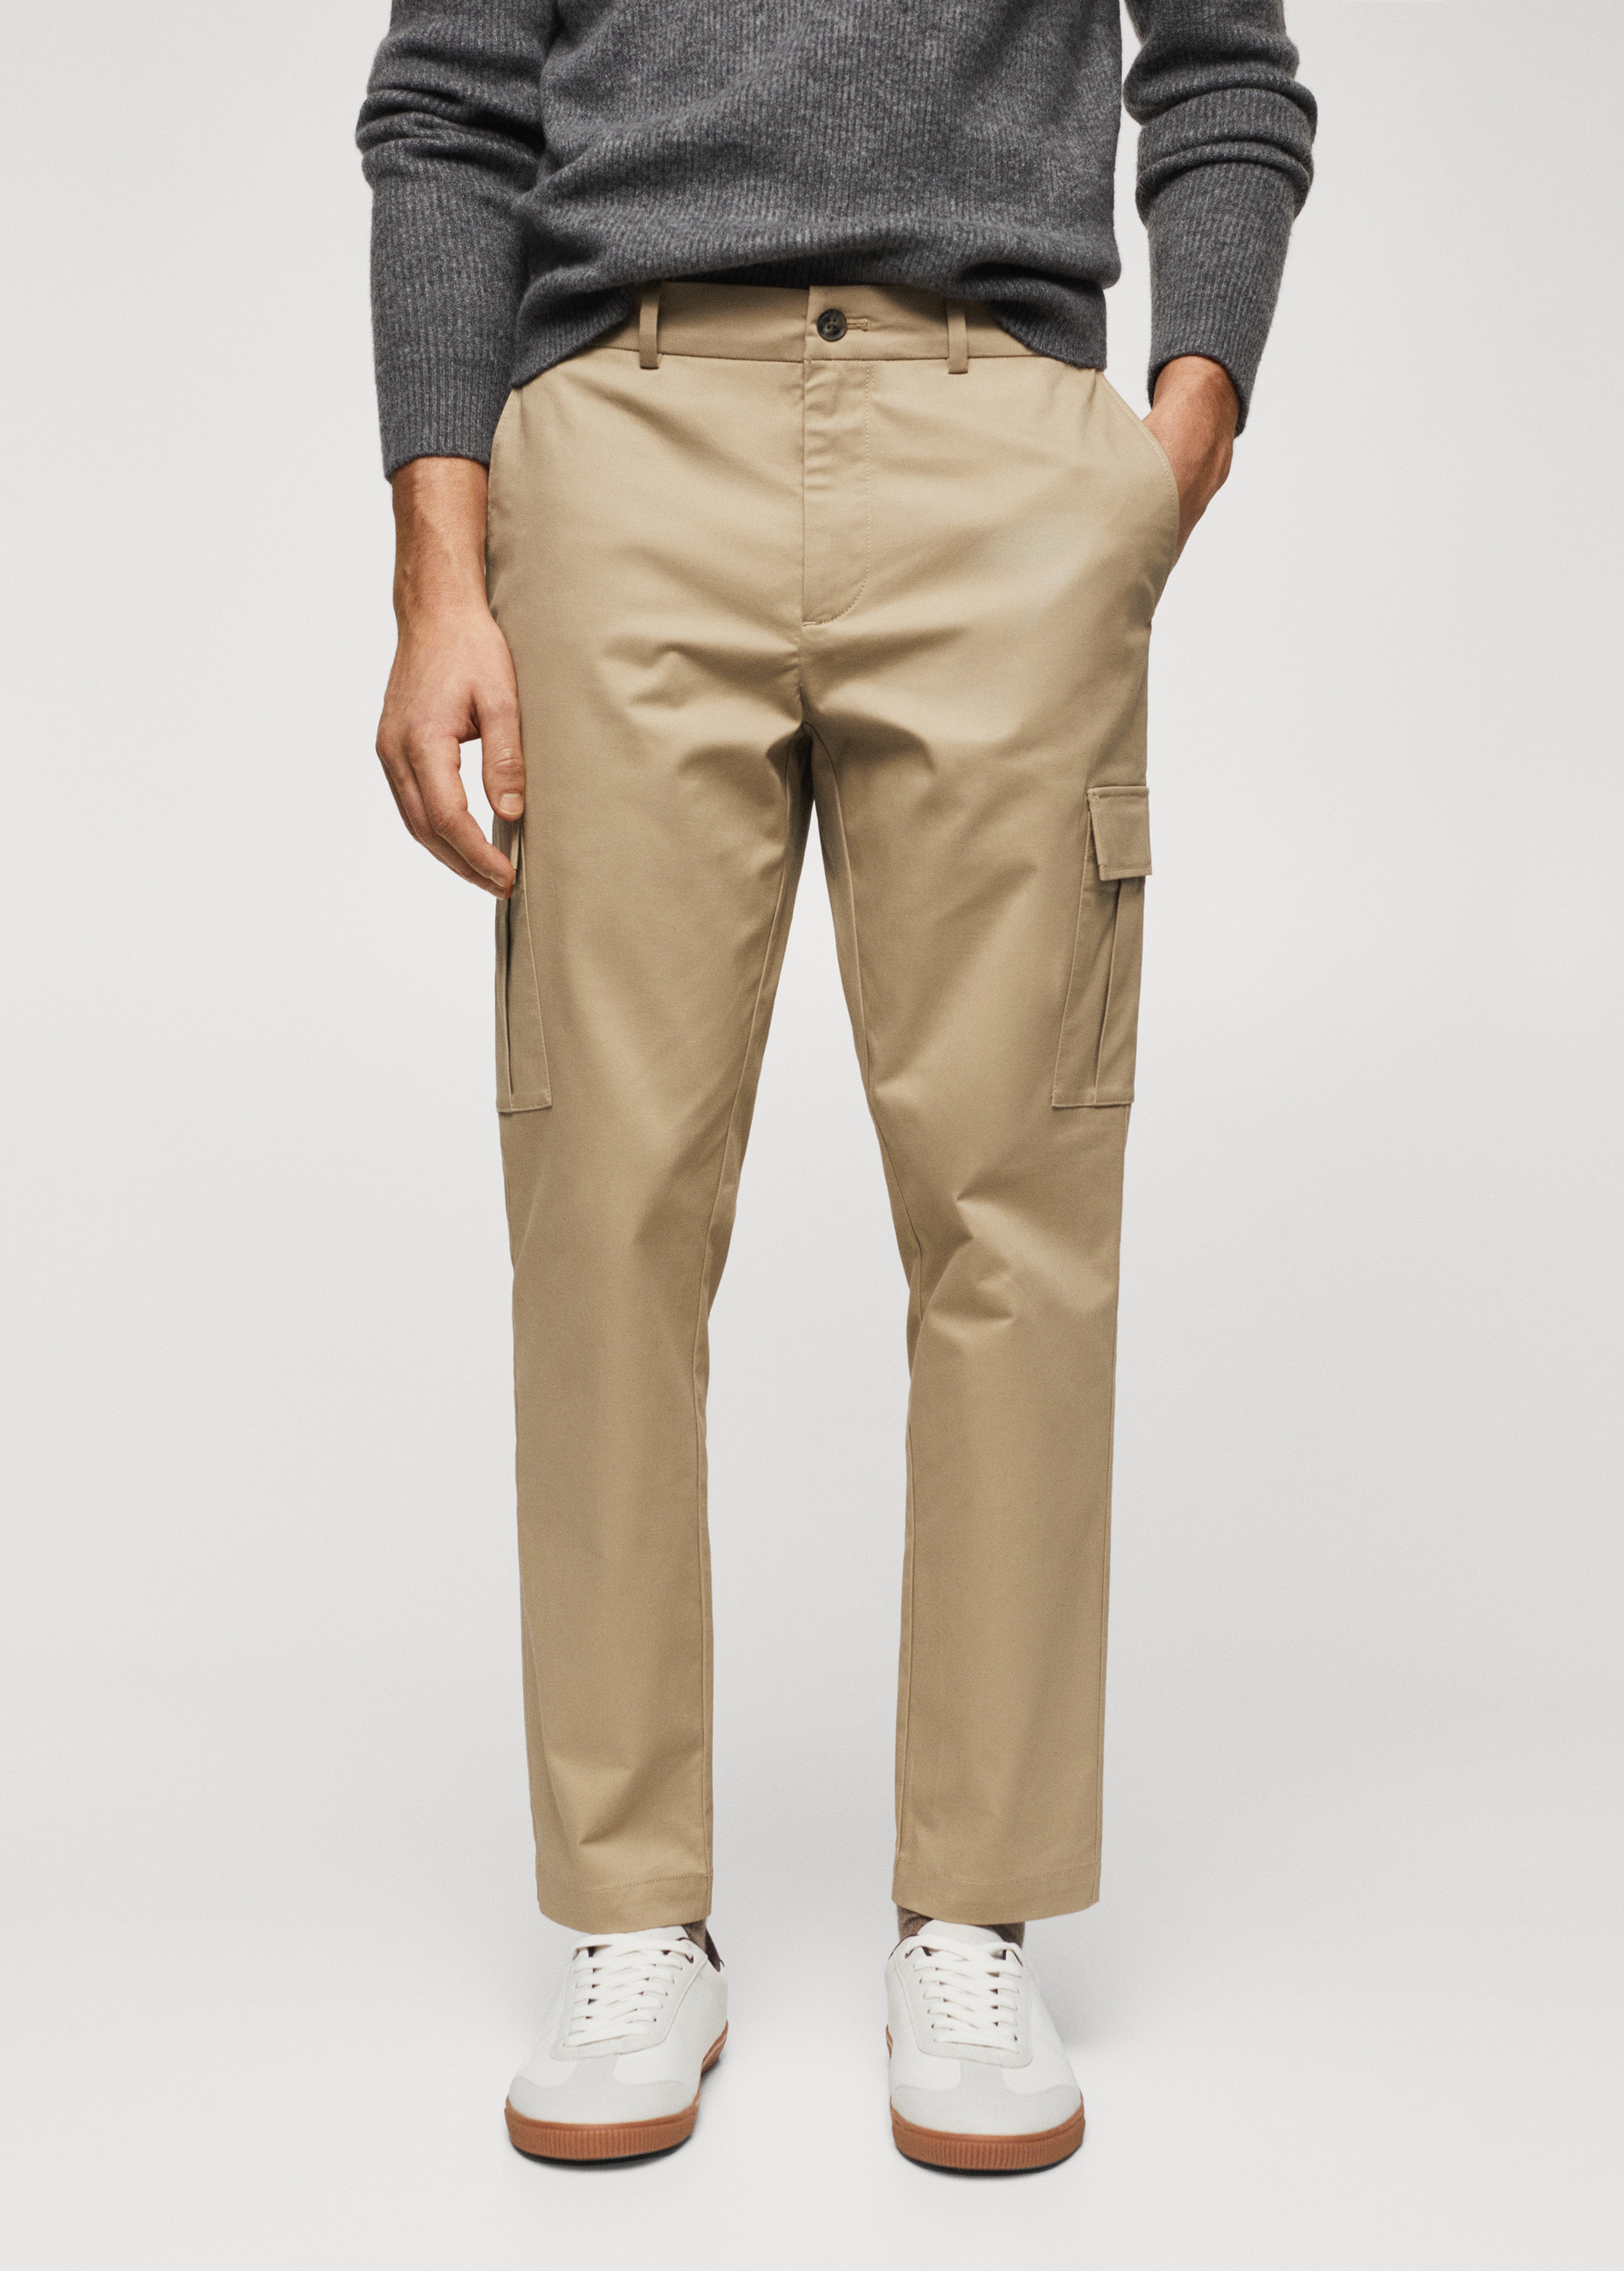 Bavlněné kalhoty s kapsami - Náhled ve středové rovině